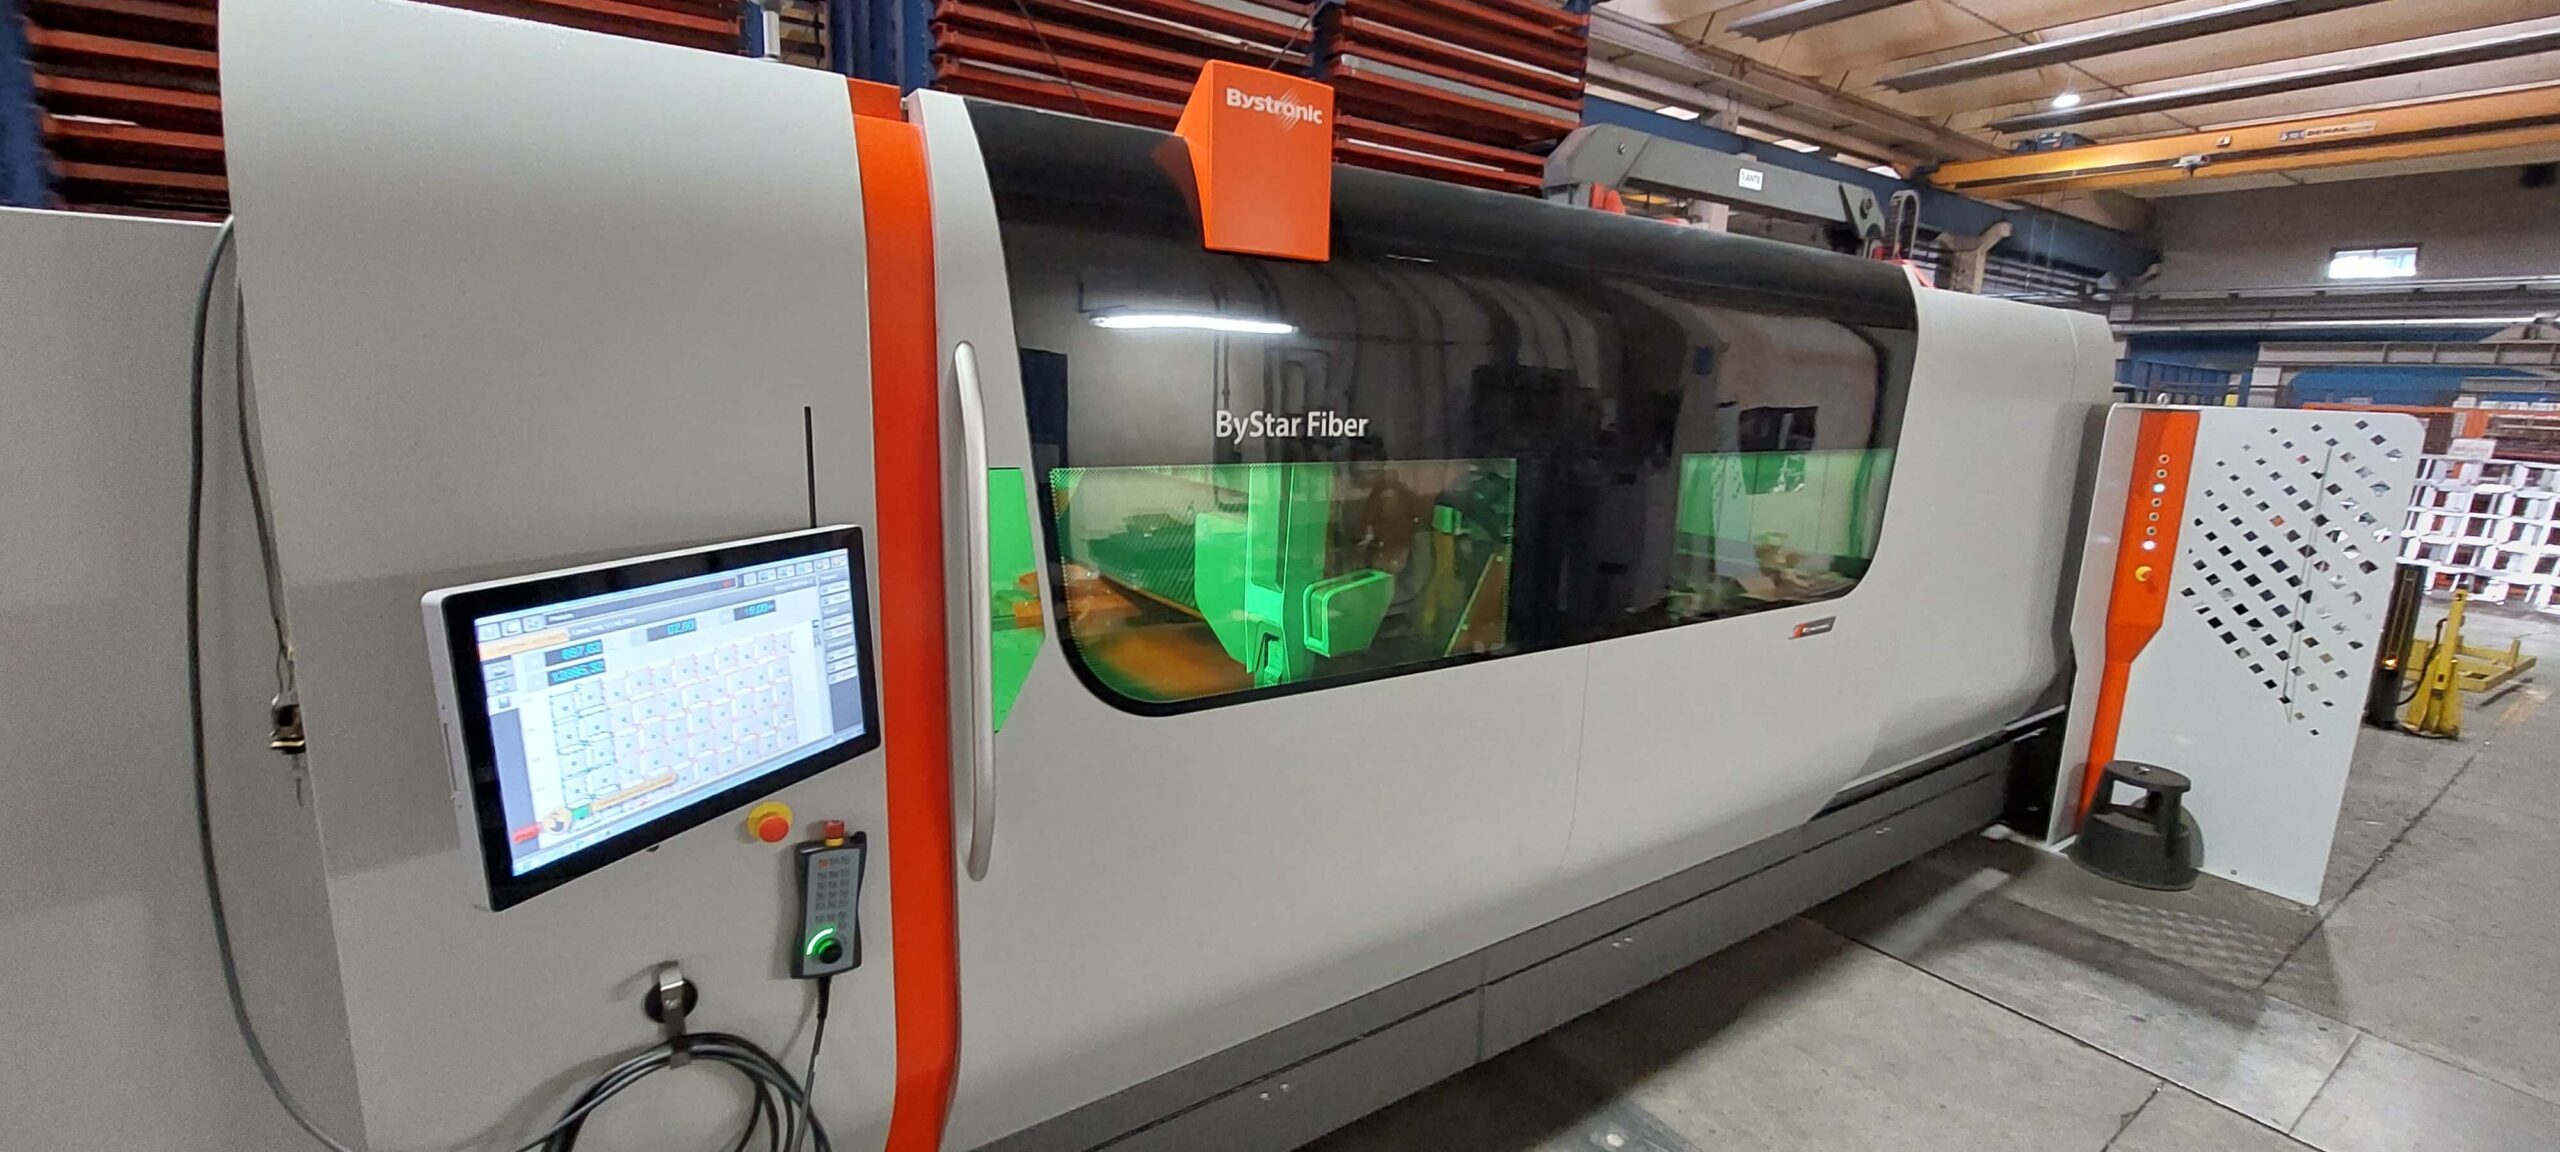 Nuove tecnologie per taglio laser di lamiere: laser fibra 8kW